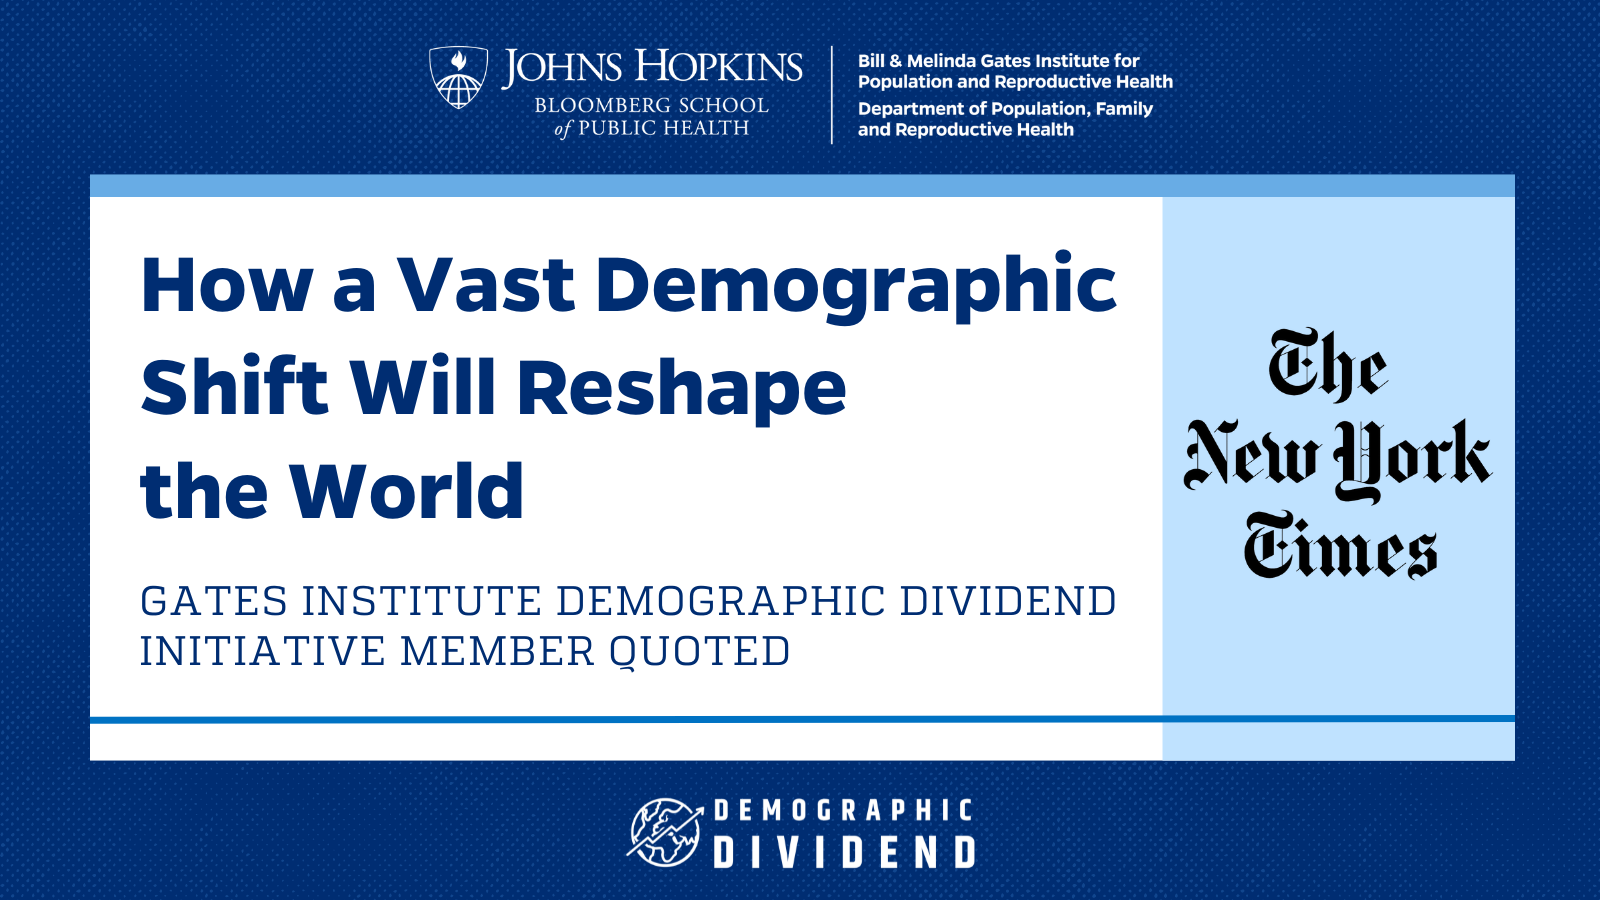 Cómo un enorme cambio demográfico reconfigurará el mundo: Cita de un miembro de la Iniciativa del Dividendo Demográfico del Instituto Gates